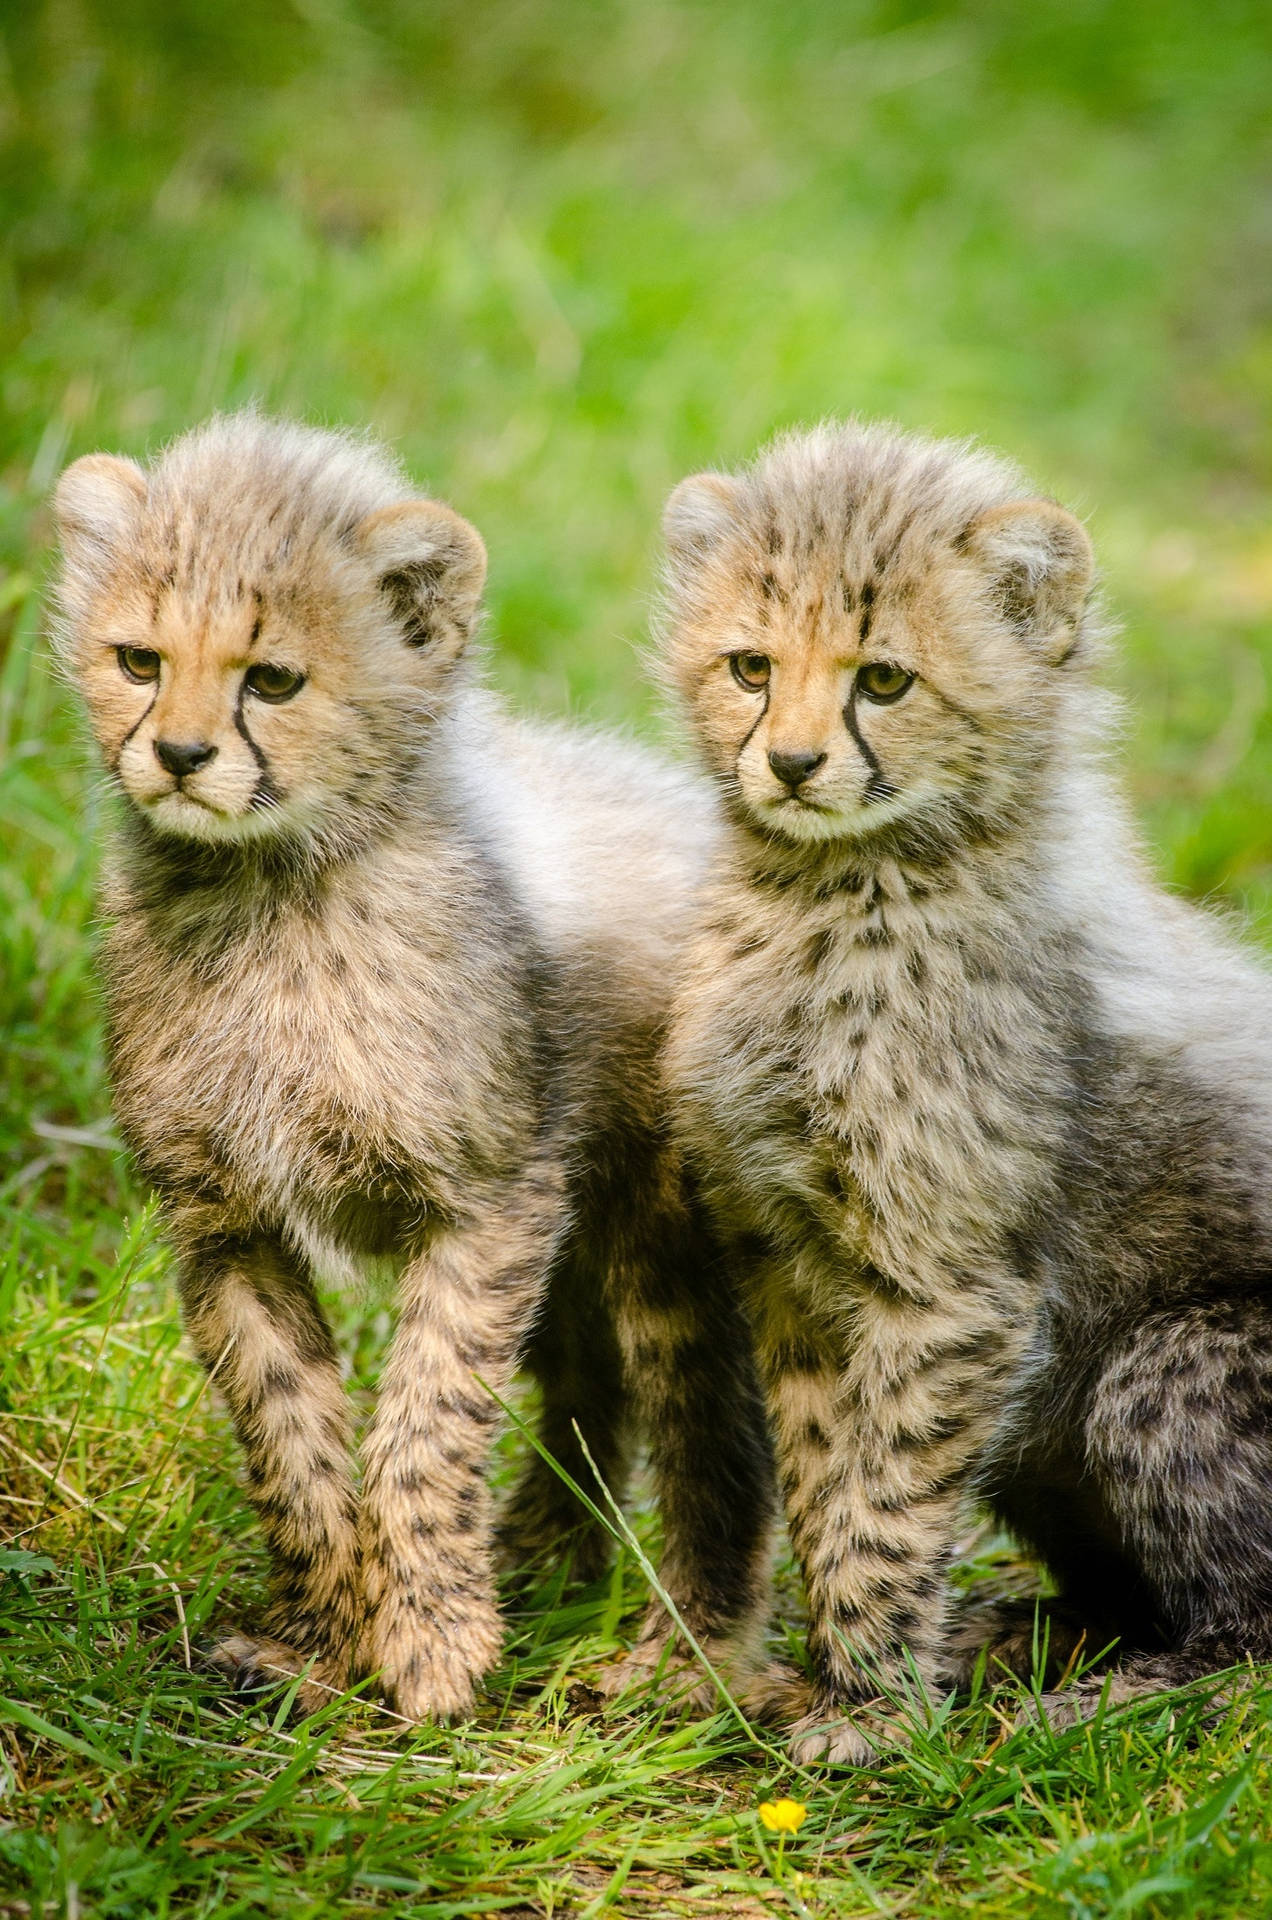 Cute Cheetah Cubs